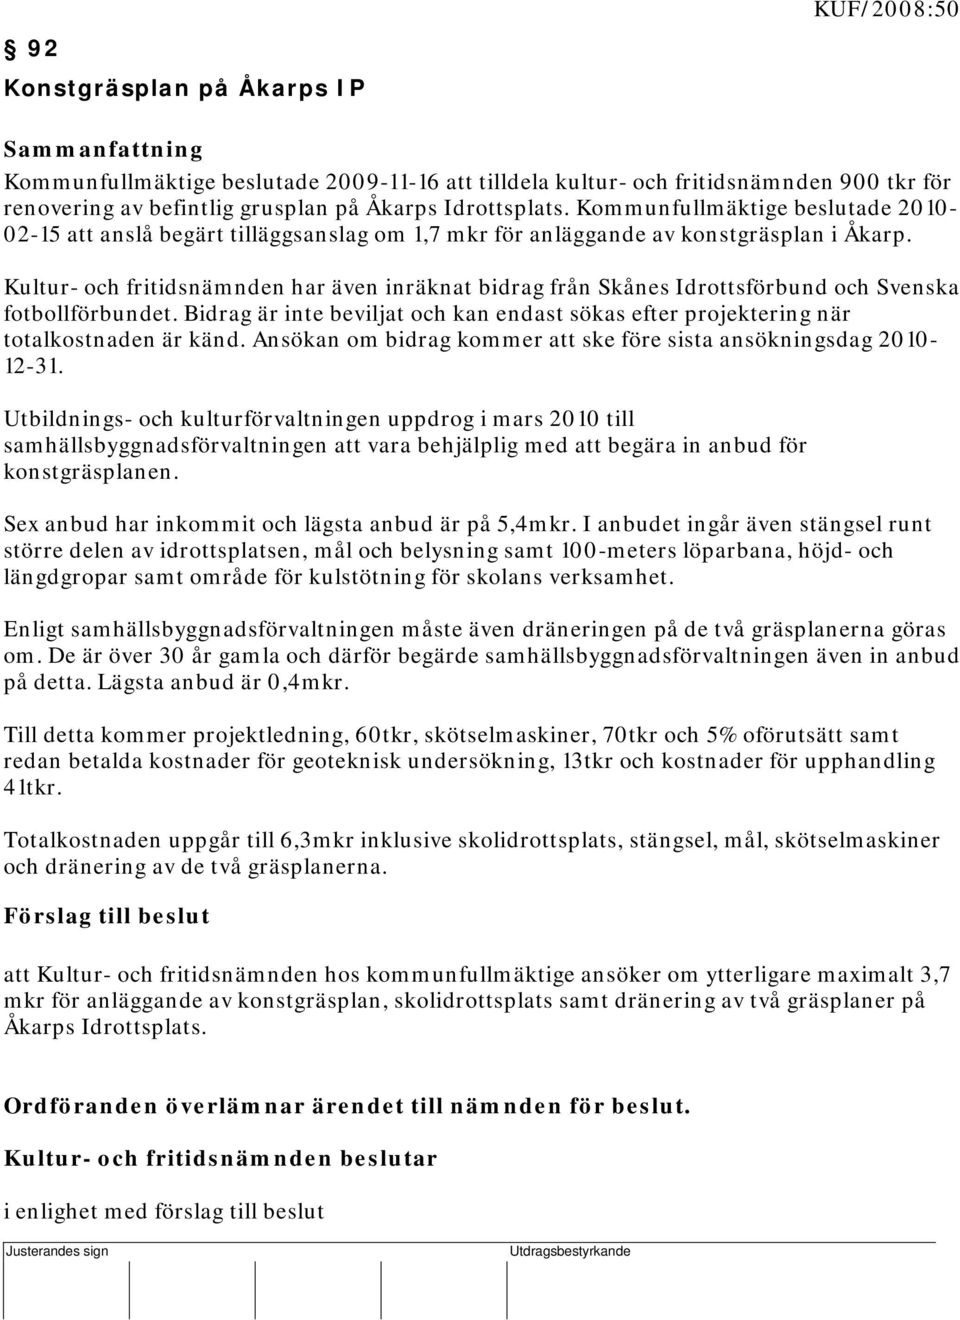 Kommunfullmäktige beslutade 2010-02-15 att anslå begärt tilläggsanslag om 1,7 mkr för anläggande av konstgräsplan i Åkarp.